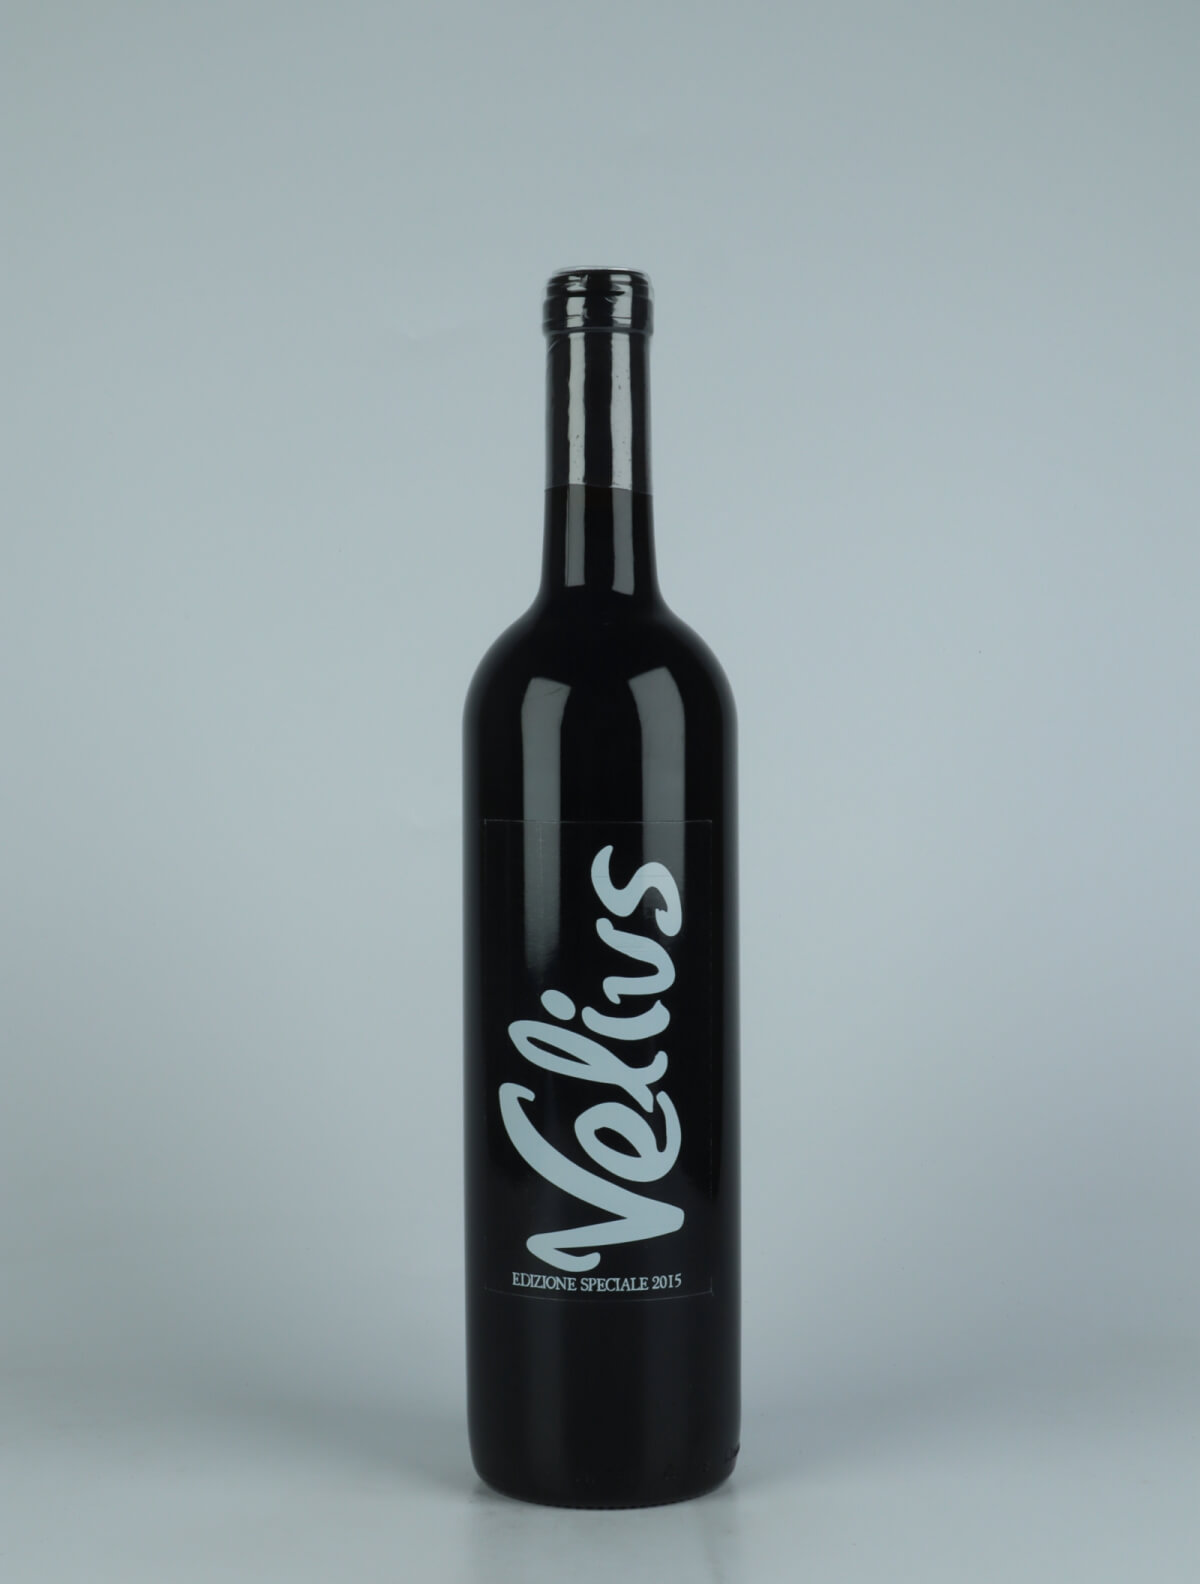 A bottle 2015 Velius - Rosso Asciutto Red wine from Podere Pradarolo, Emilia-Romagna in Italy